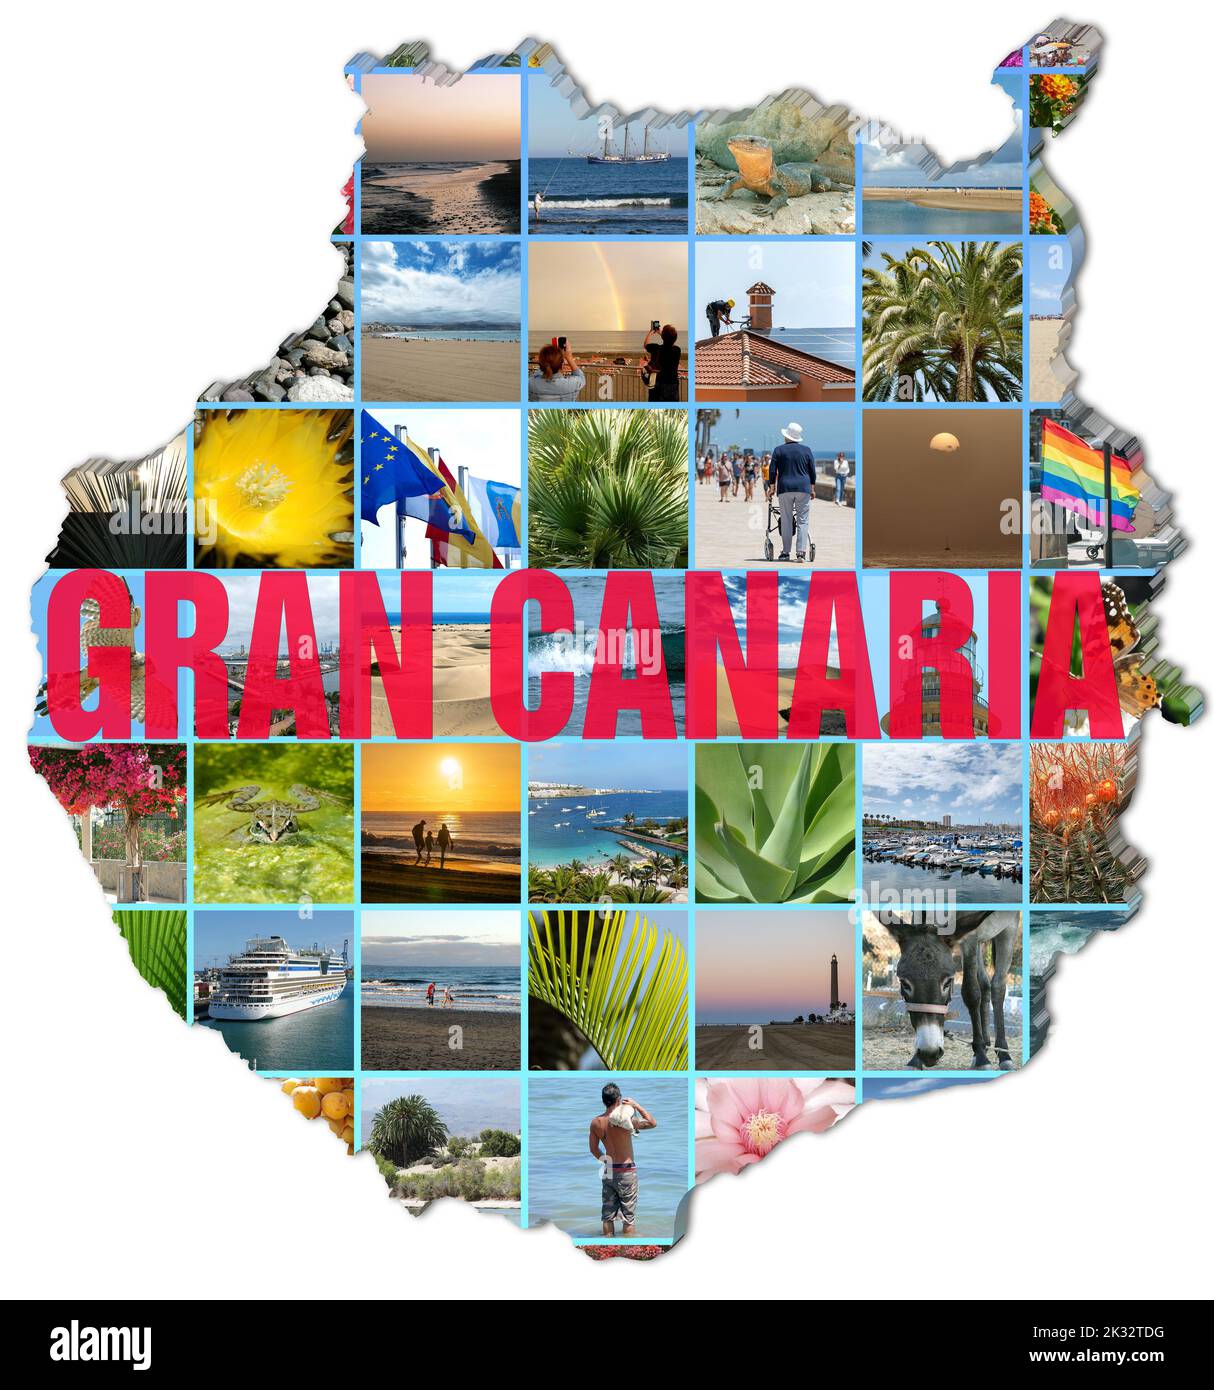 Collage de fotos de Gran Canaria en el mapa de Gran Canaria, fondo blanco y texto 'Gran Canaria'. Foto de stock